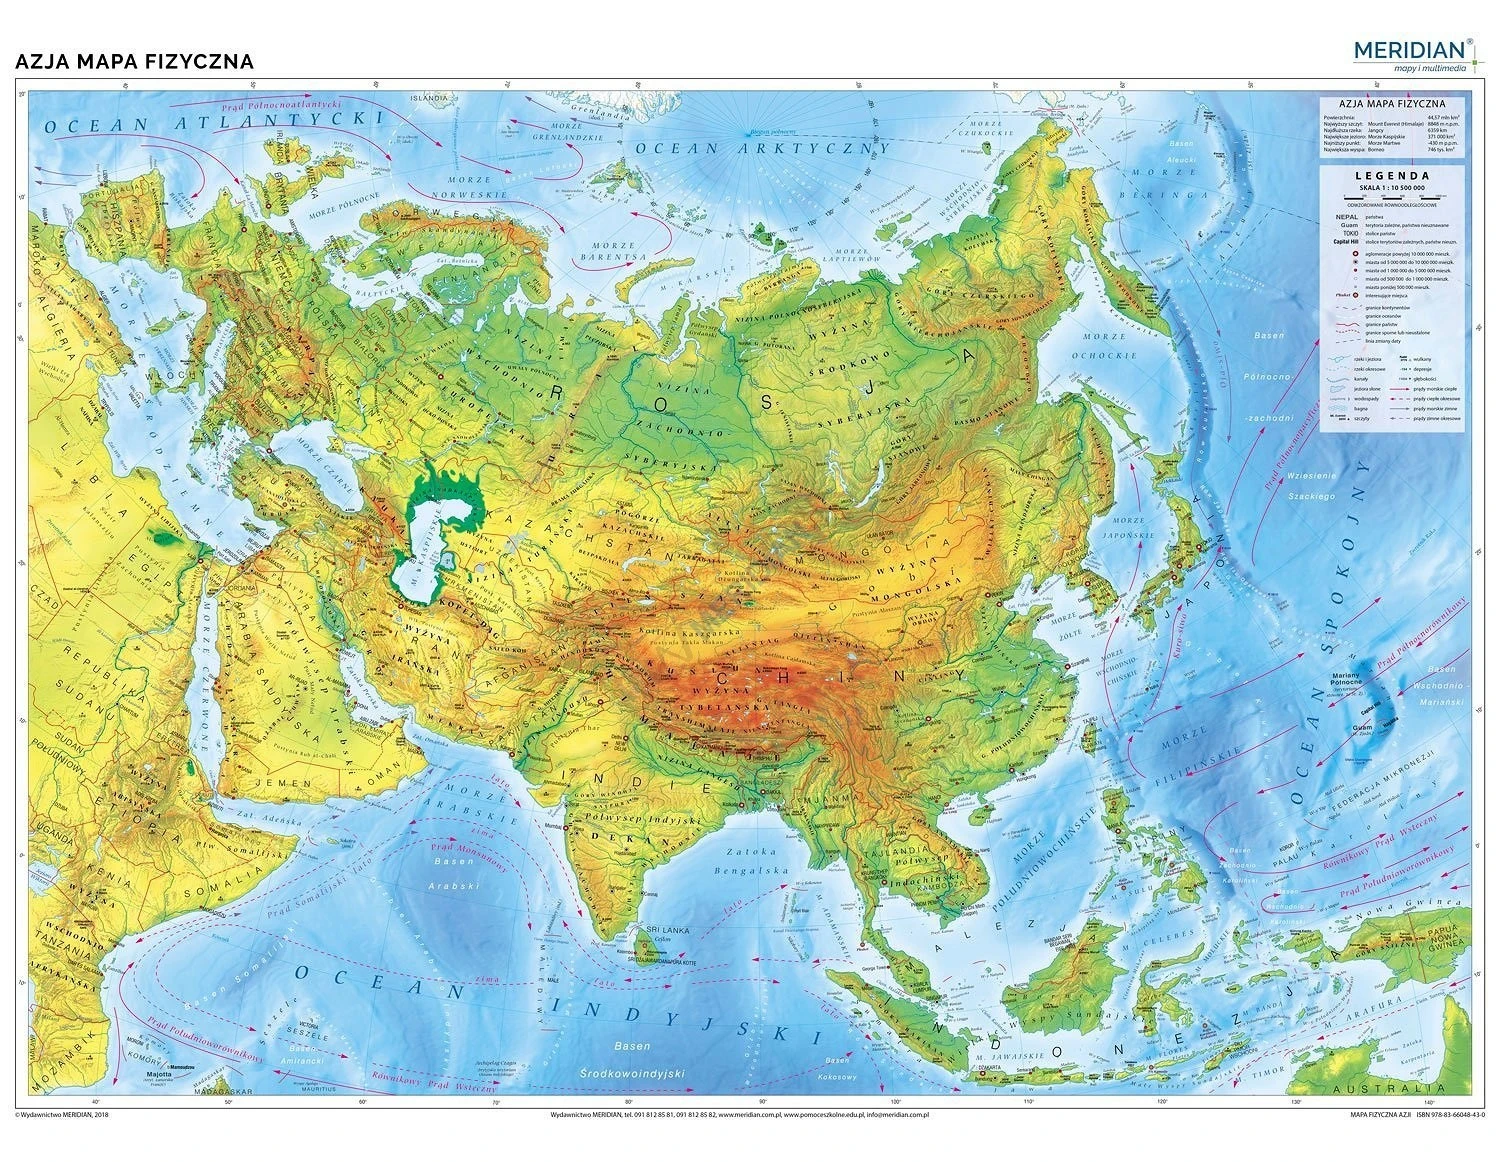 Azja mapa fizyczna - mapa ścienna 